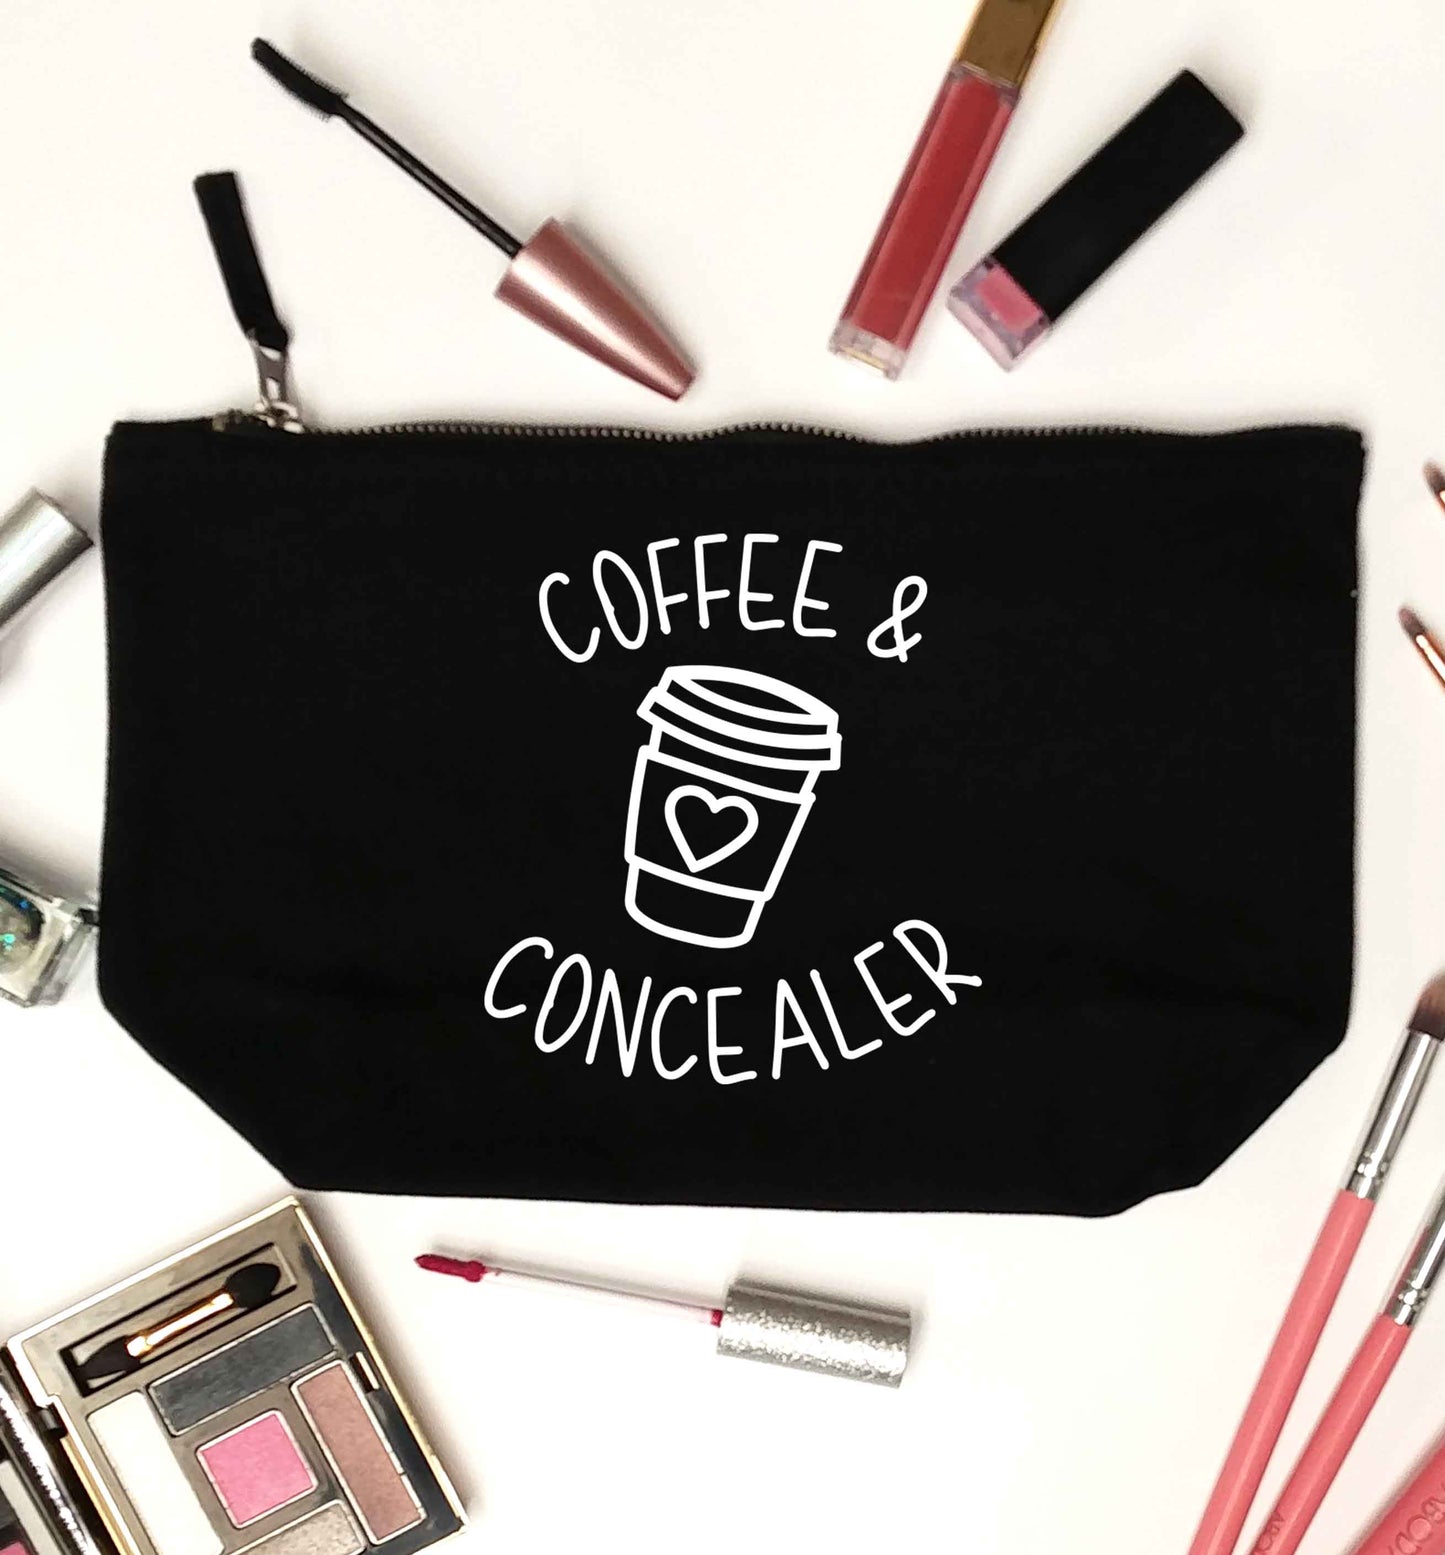 Coffee and concealer black makeup bag